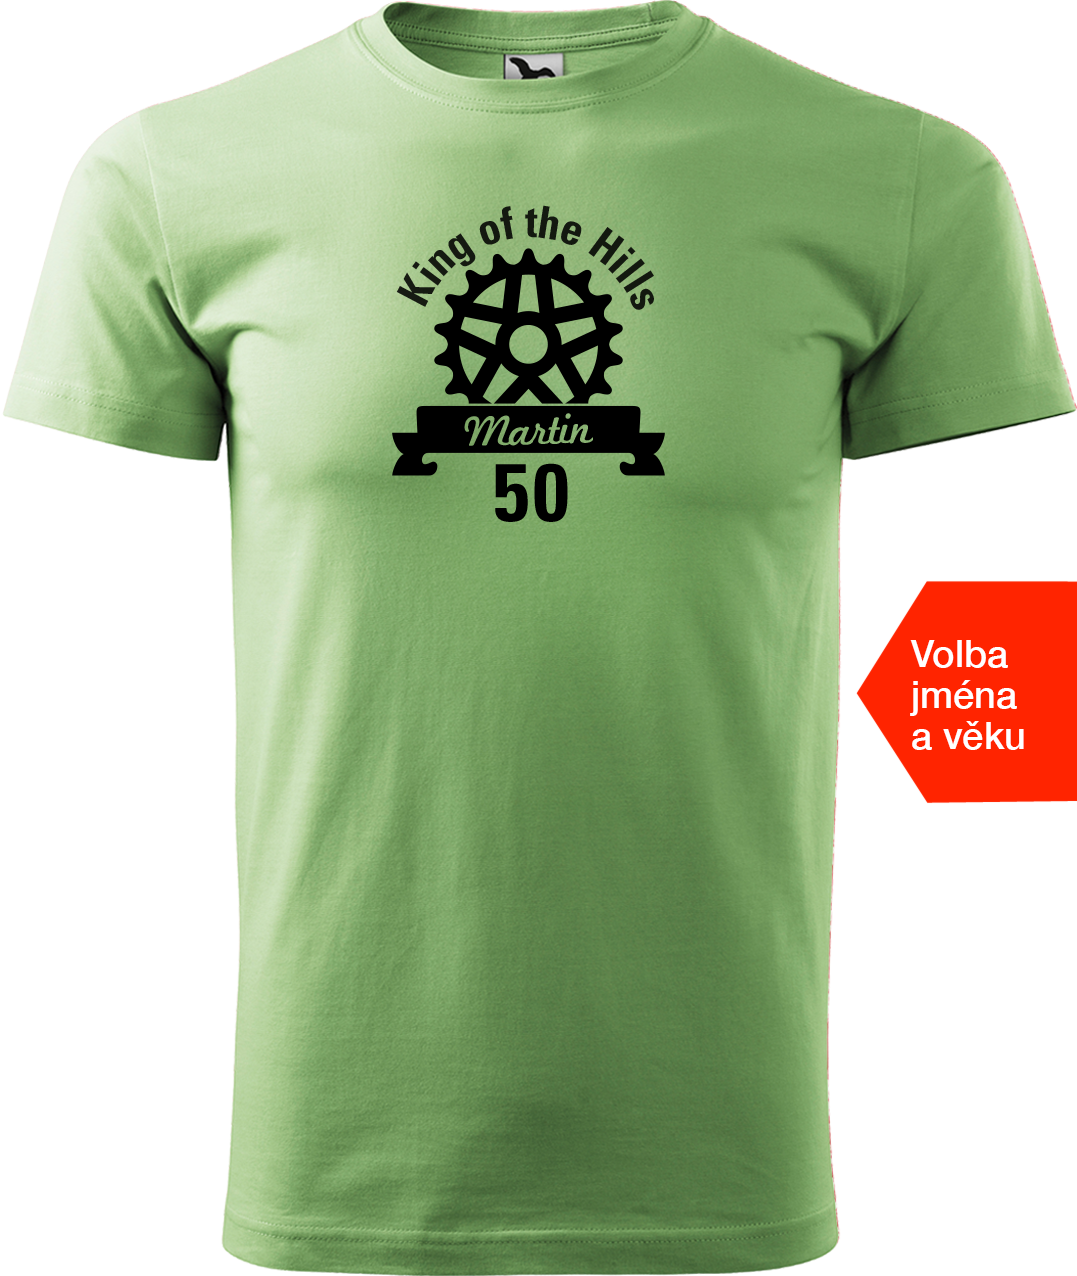 Pánské tričko pro cyklistu se jménem - King of the Hills Velikost: M, Barva: Trávově zelená (39)